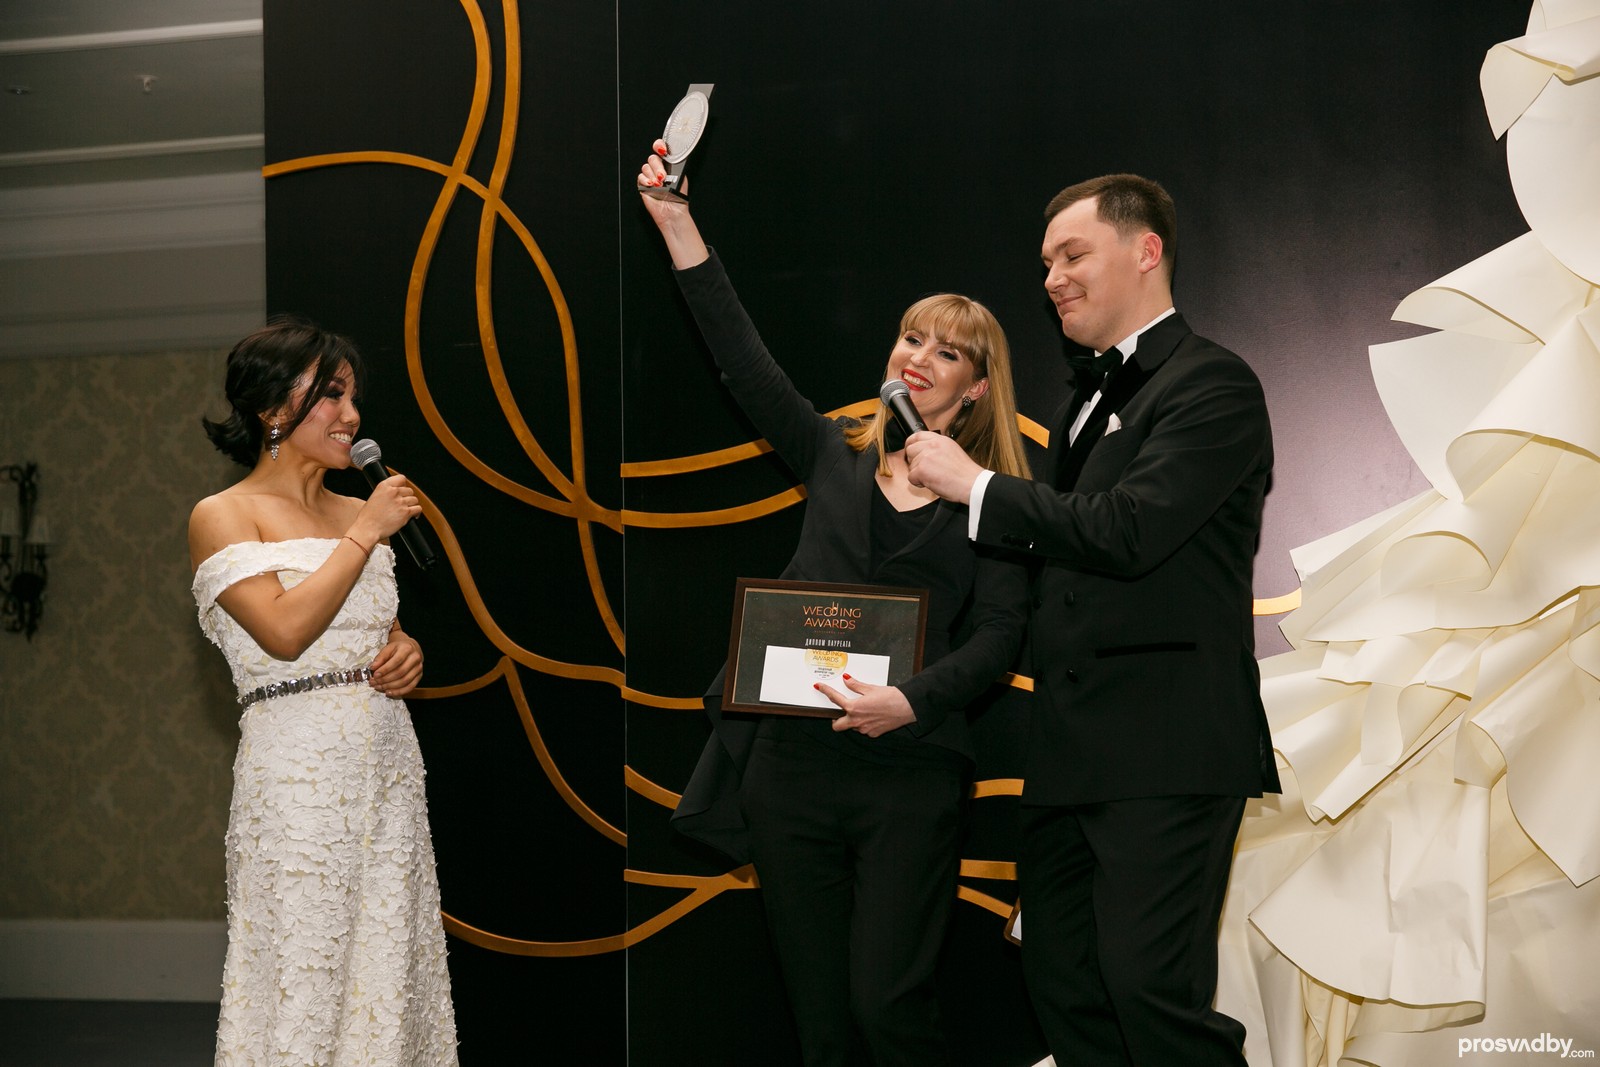 Светлана Назарова, Good Design уже в третий раз становится лауреатом Свадебной премии - это рекорд! Вручала статуэтку известная актриса Гульжан Алиш